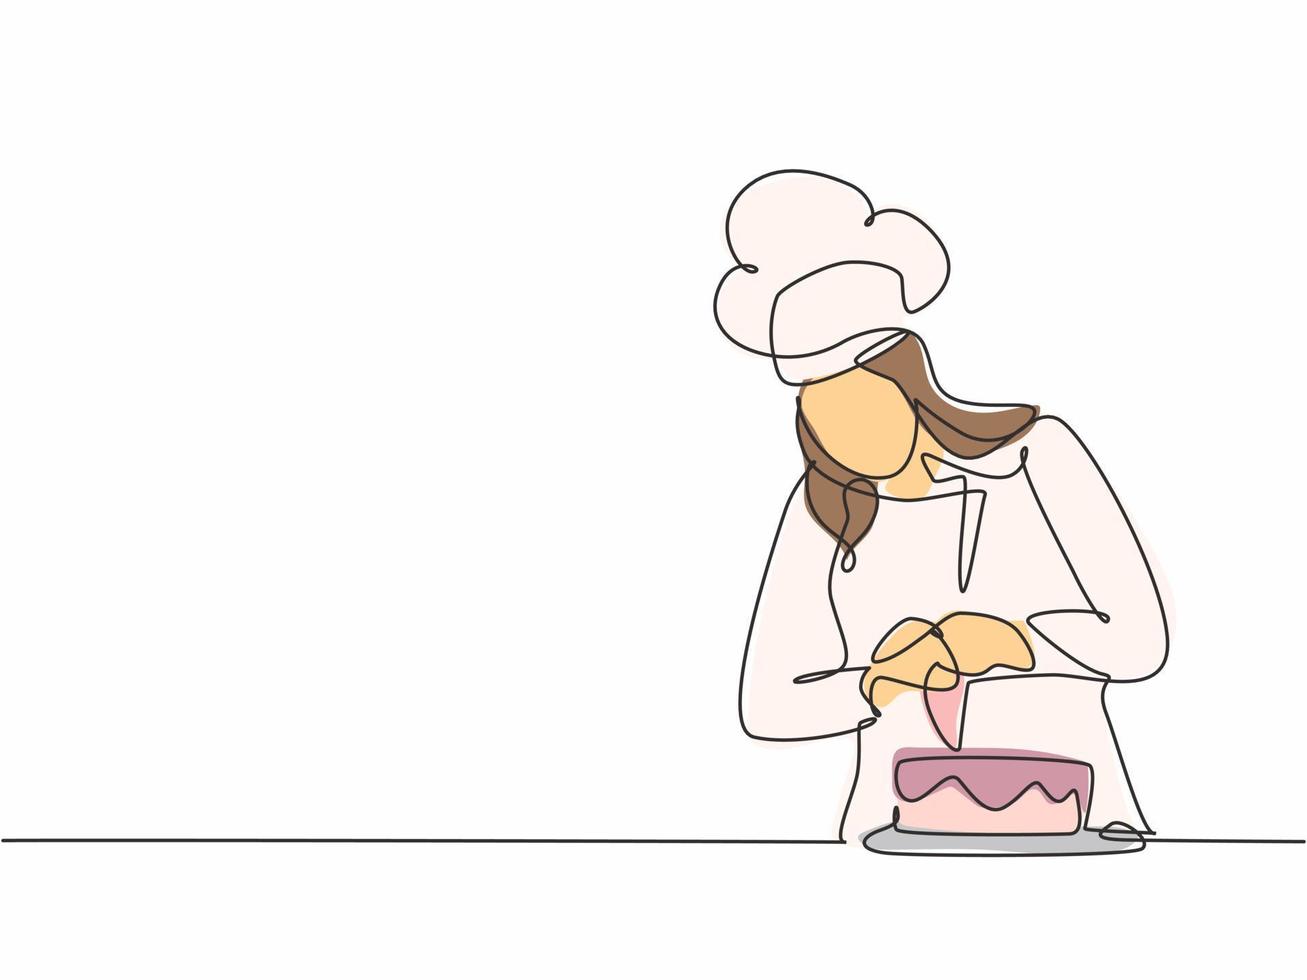 enda kontinuerlig radritning ung kvinnlig kock som dekorerar födelsedagsbakelse med vispgrädde på restaurangkök. bageri mat koncept en rad ritning design vektor minimalism illustration